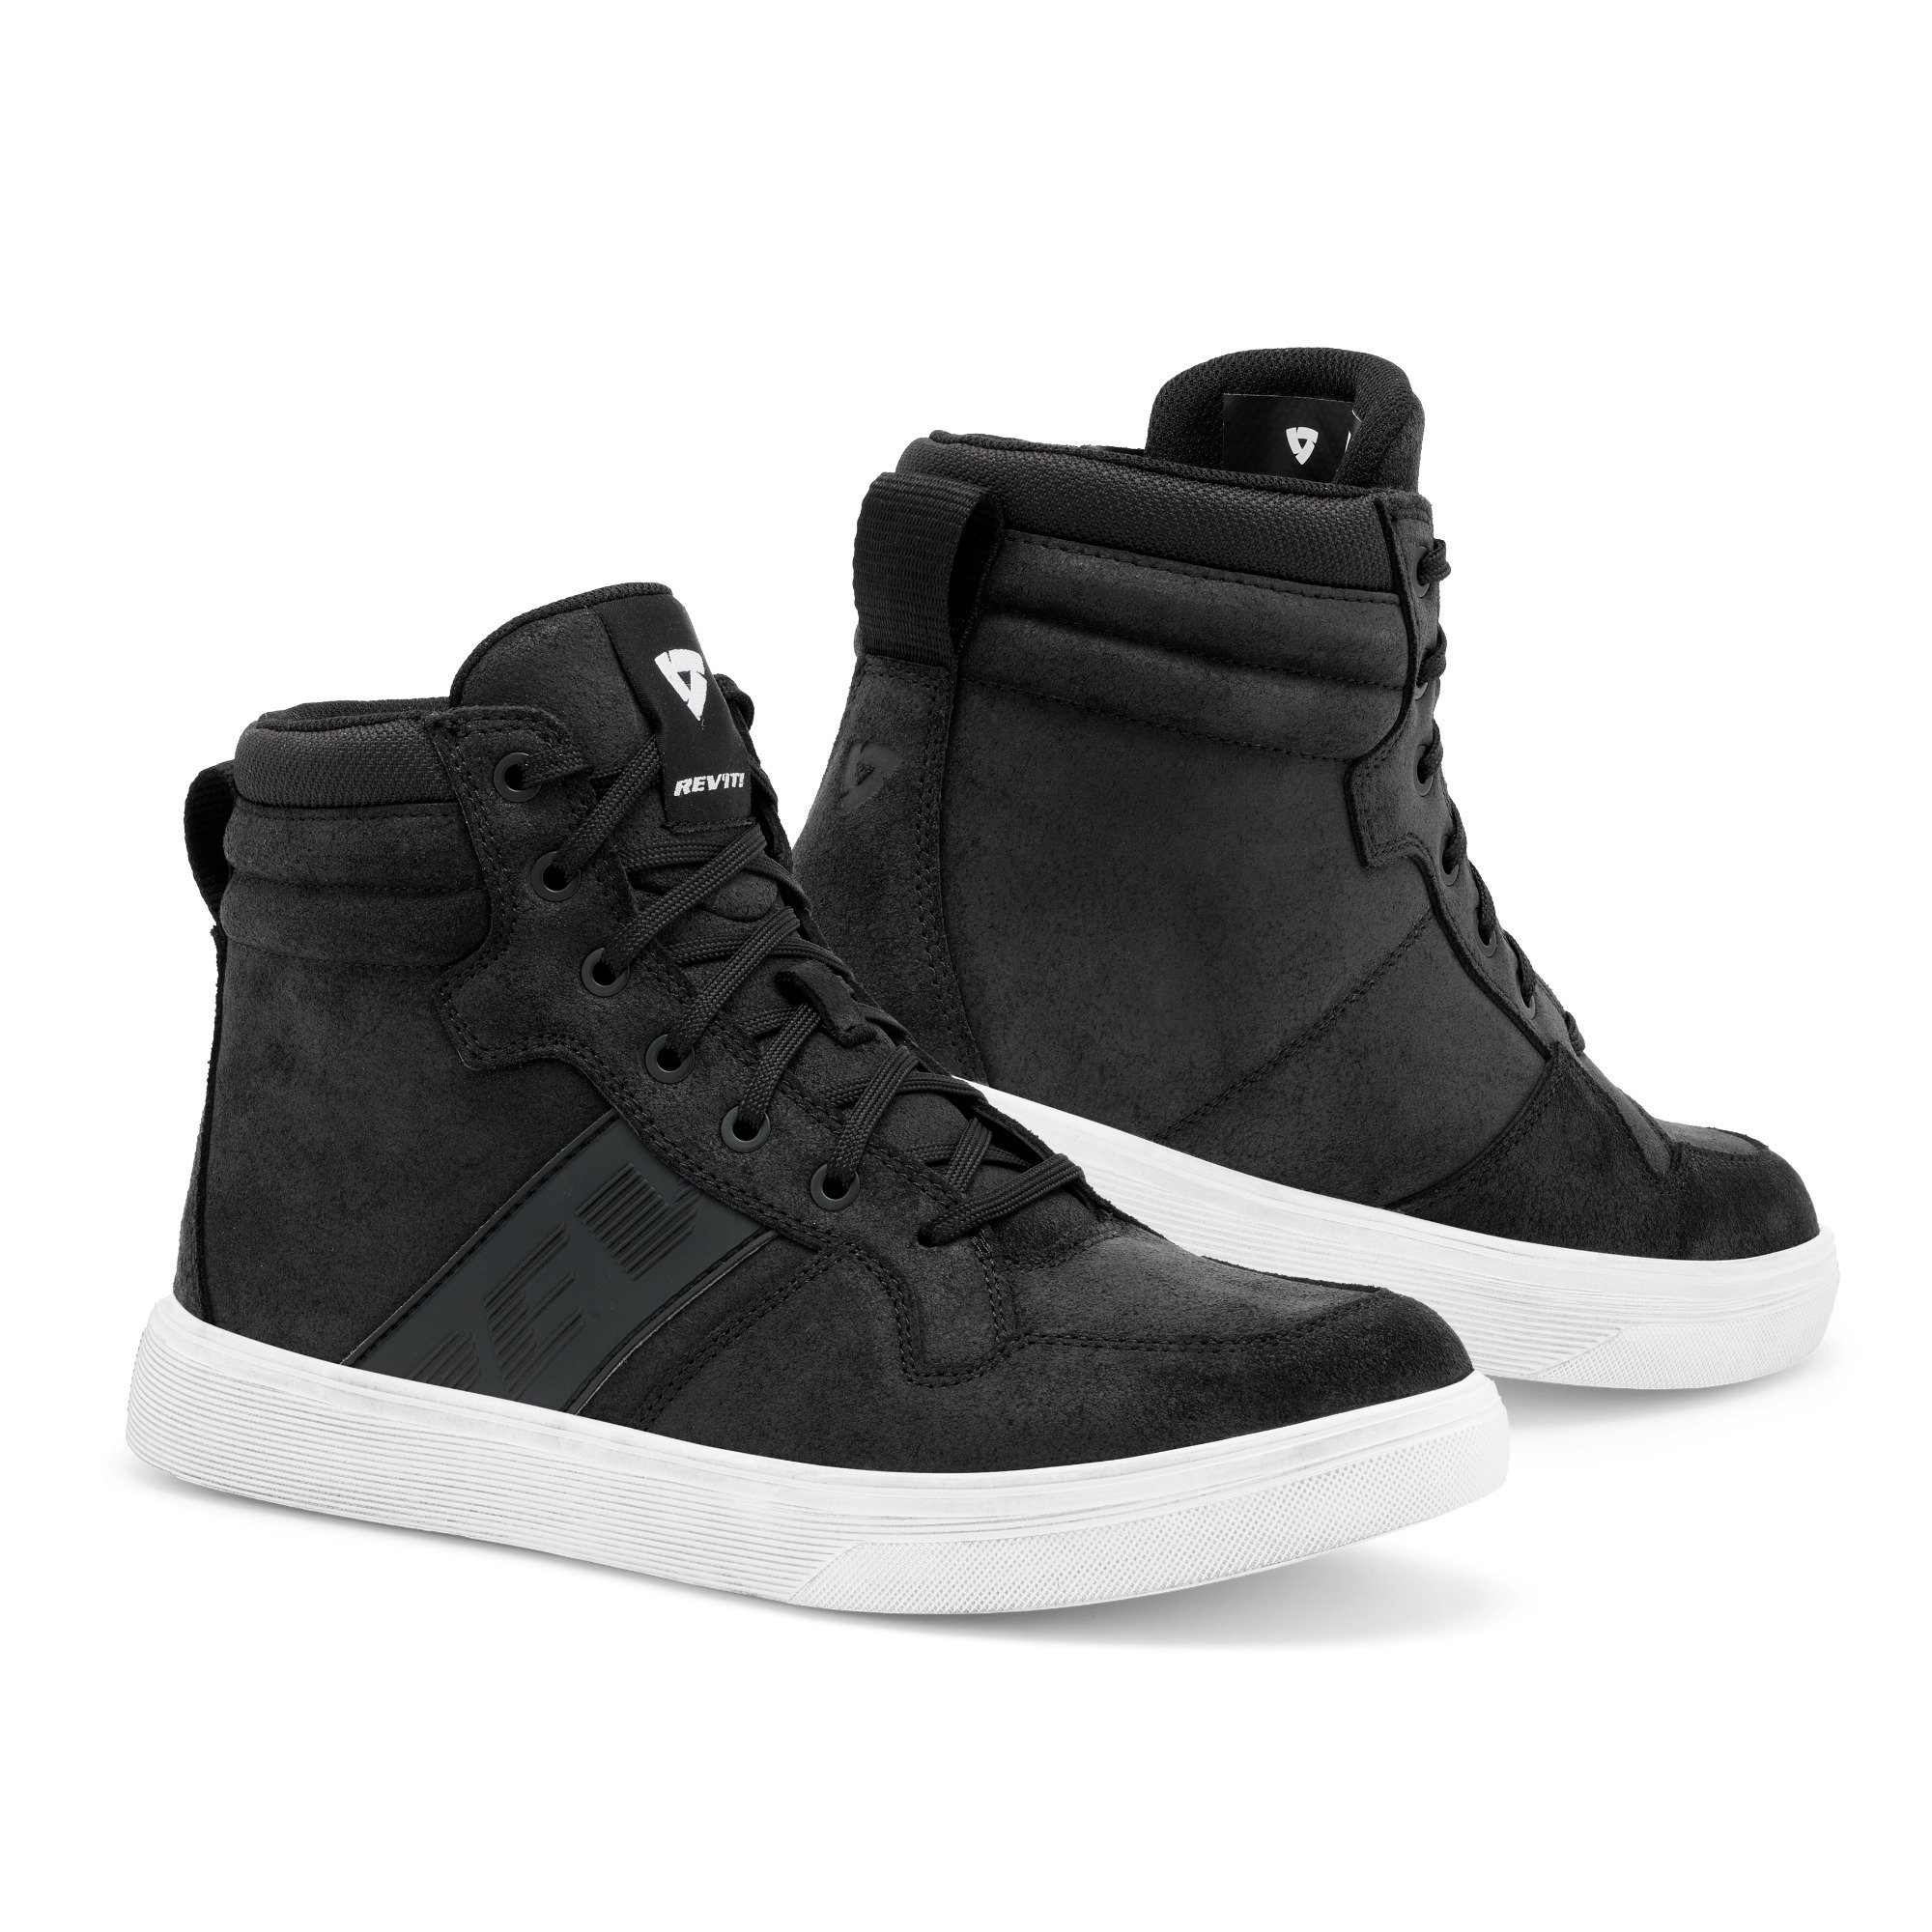 Image of REV'IT! Kick Shoes Black White Size 43 EN